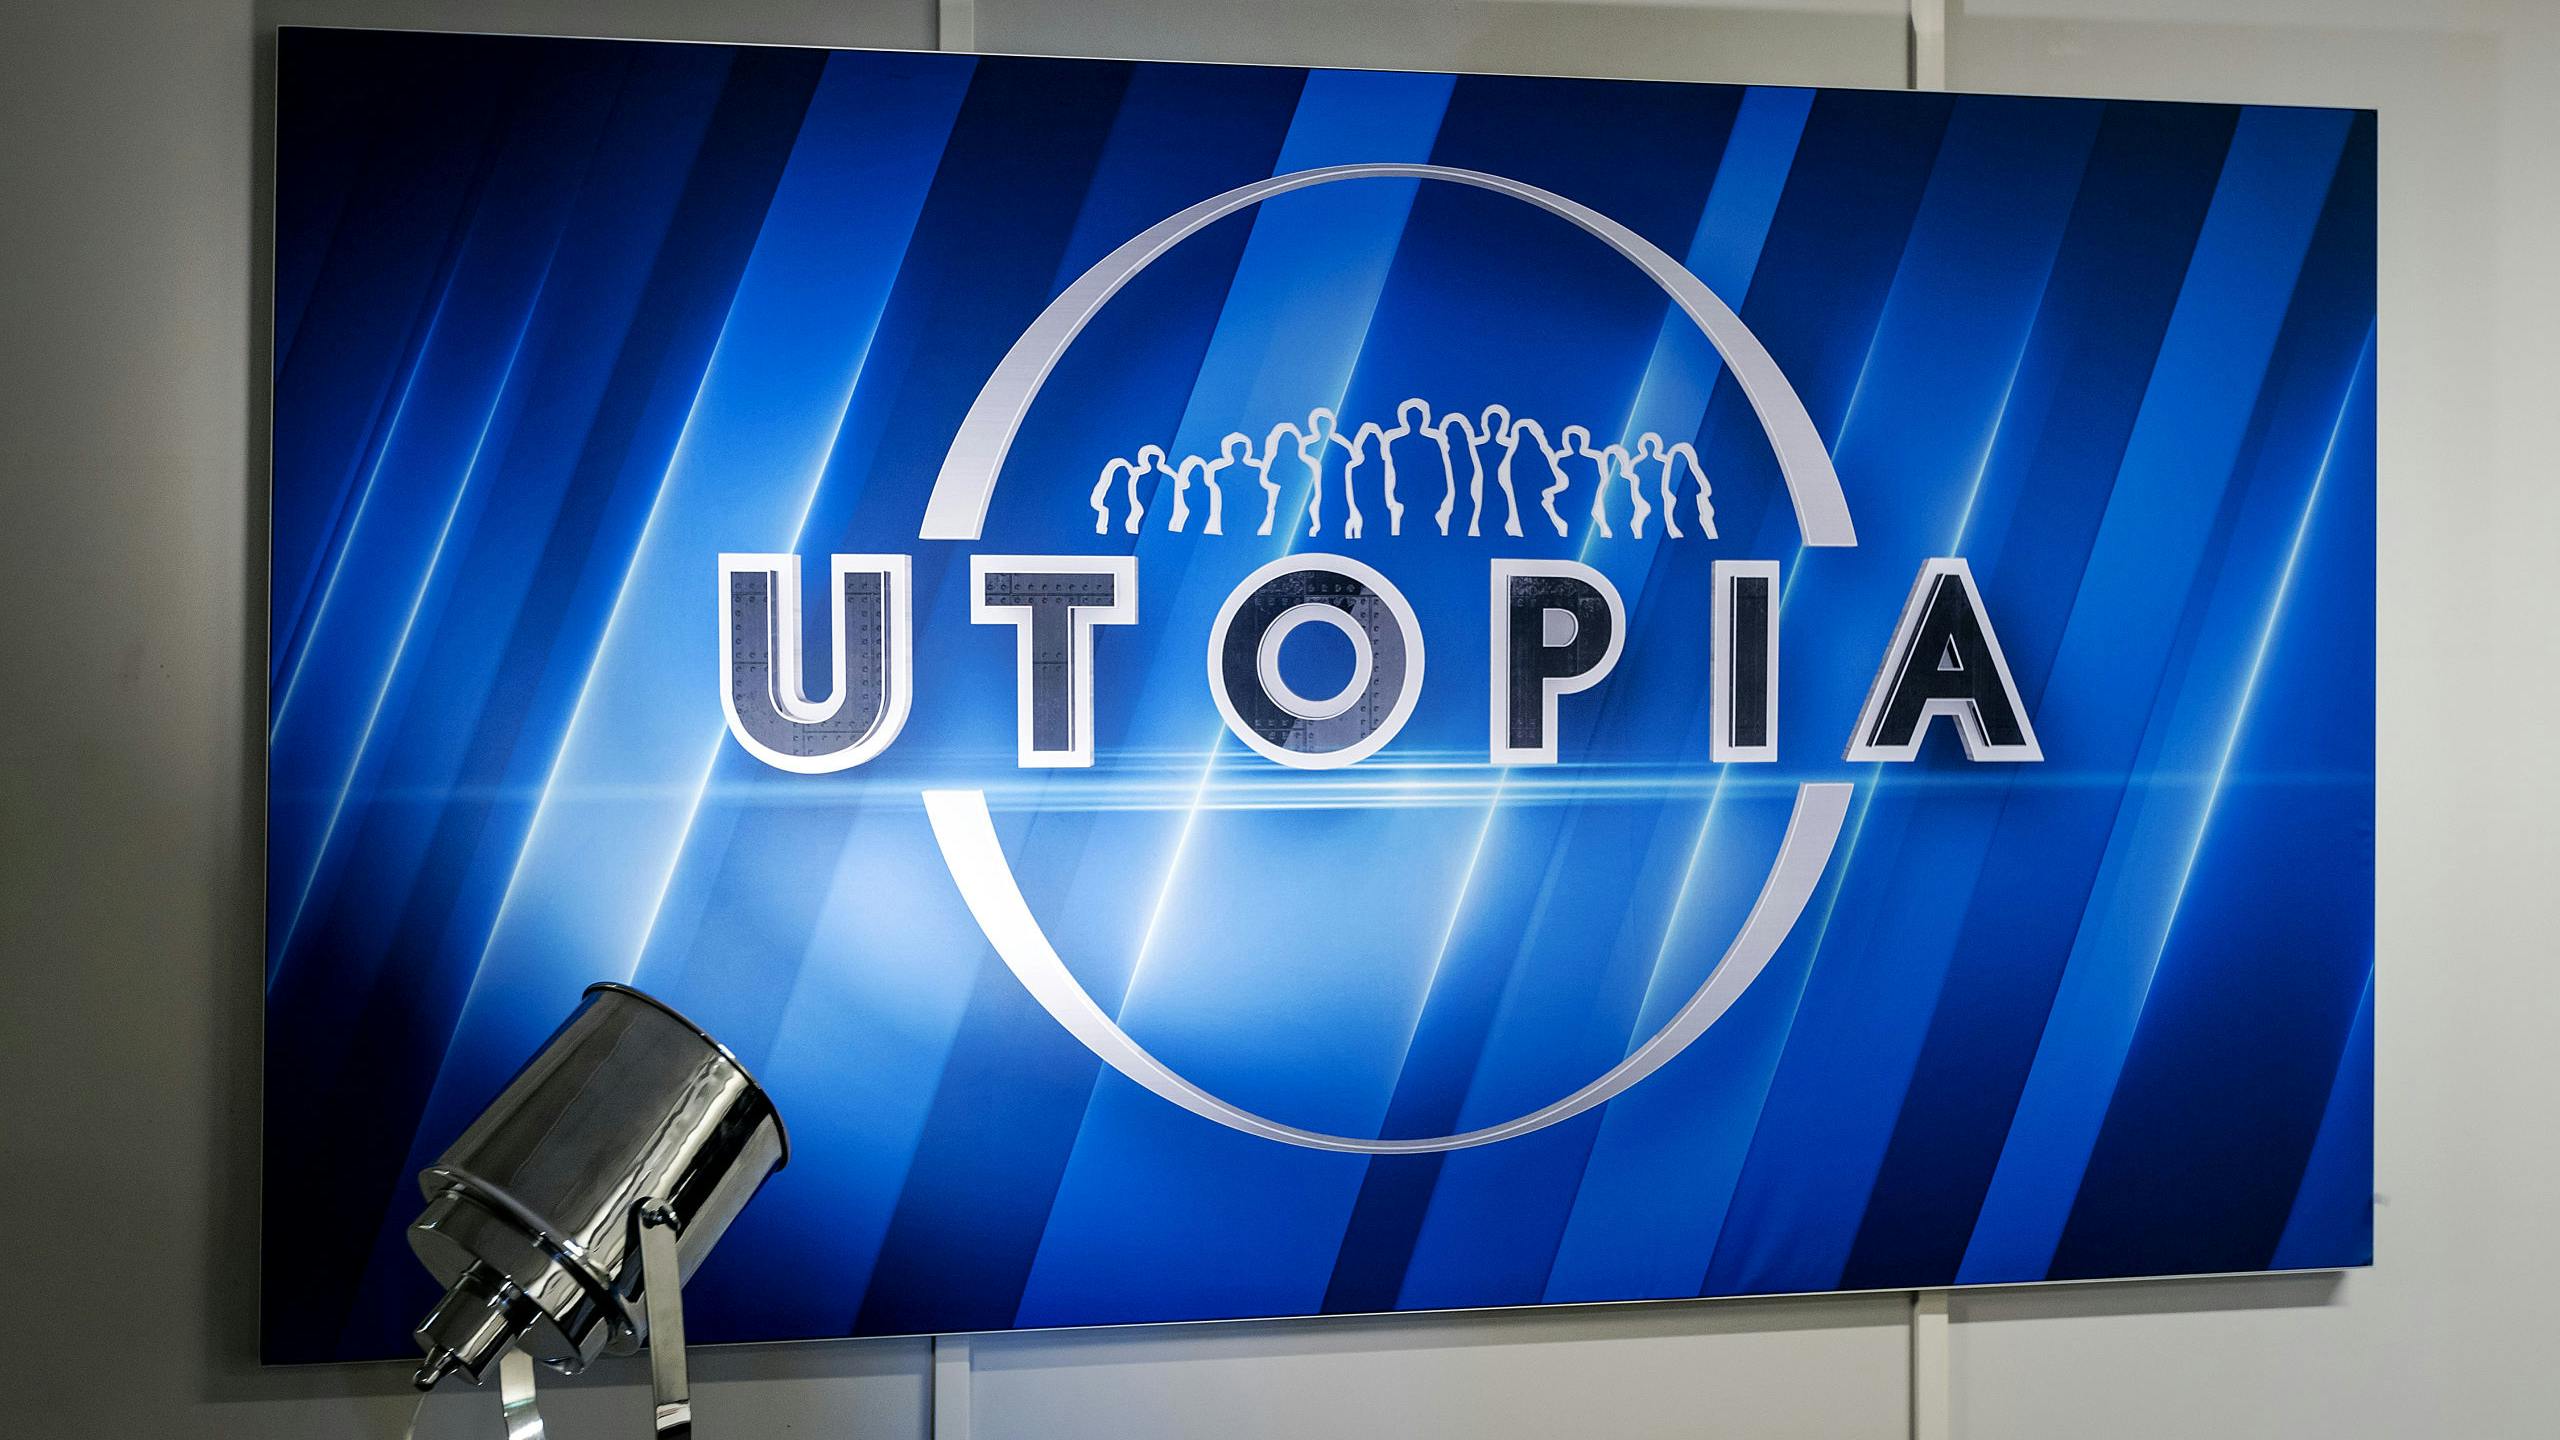 Eén van de meest recente succesvolle Nederlandse tv-formats is Utopia